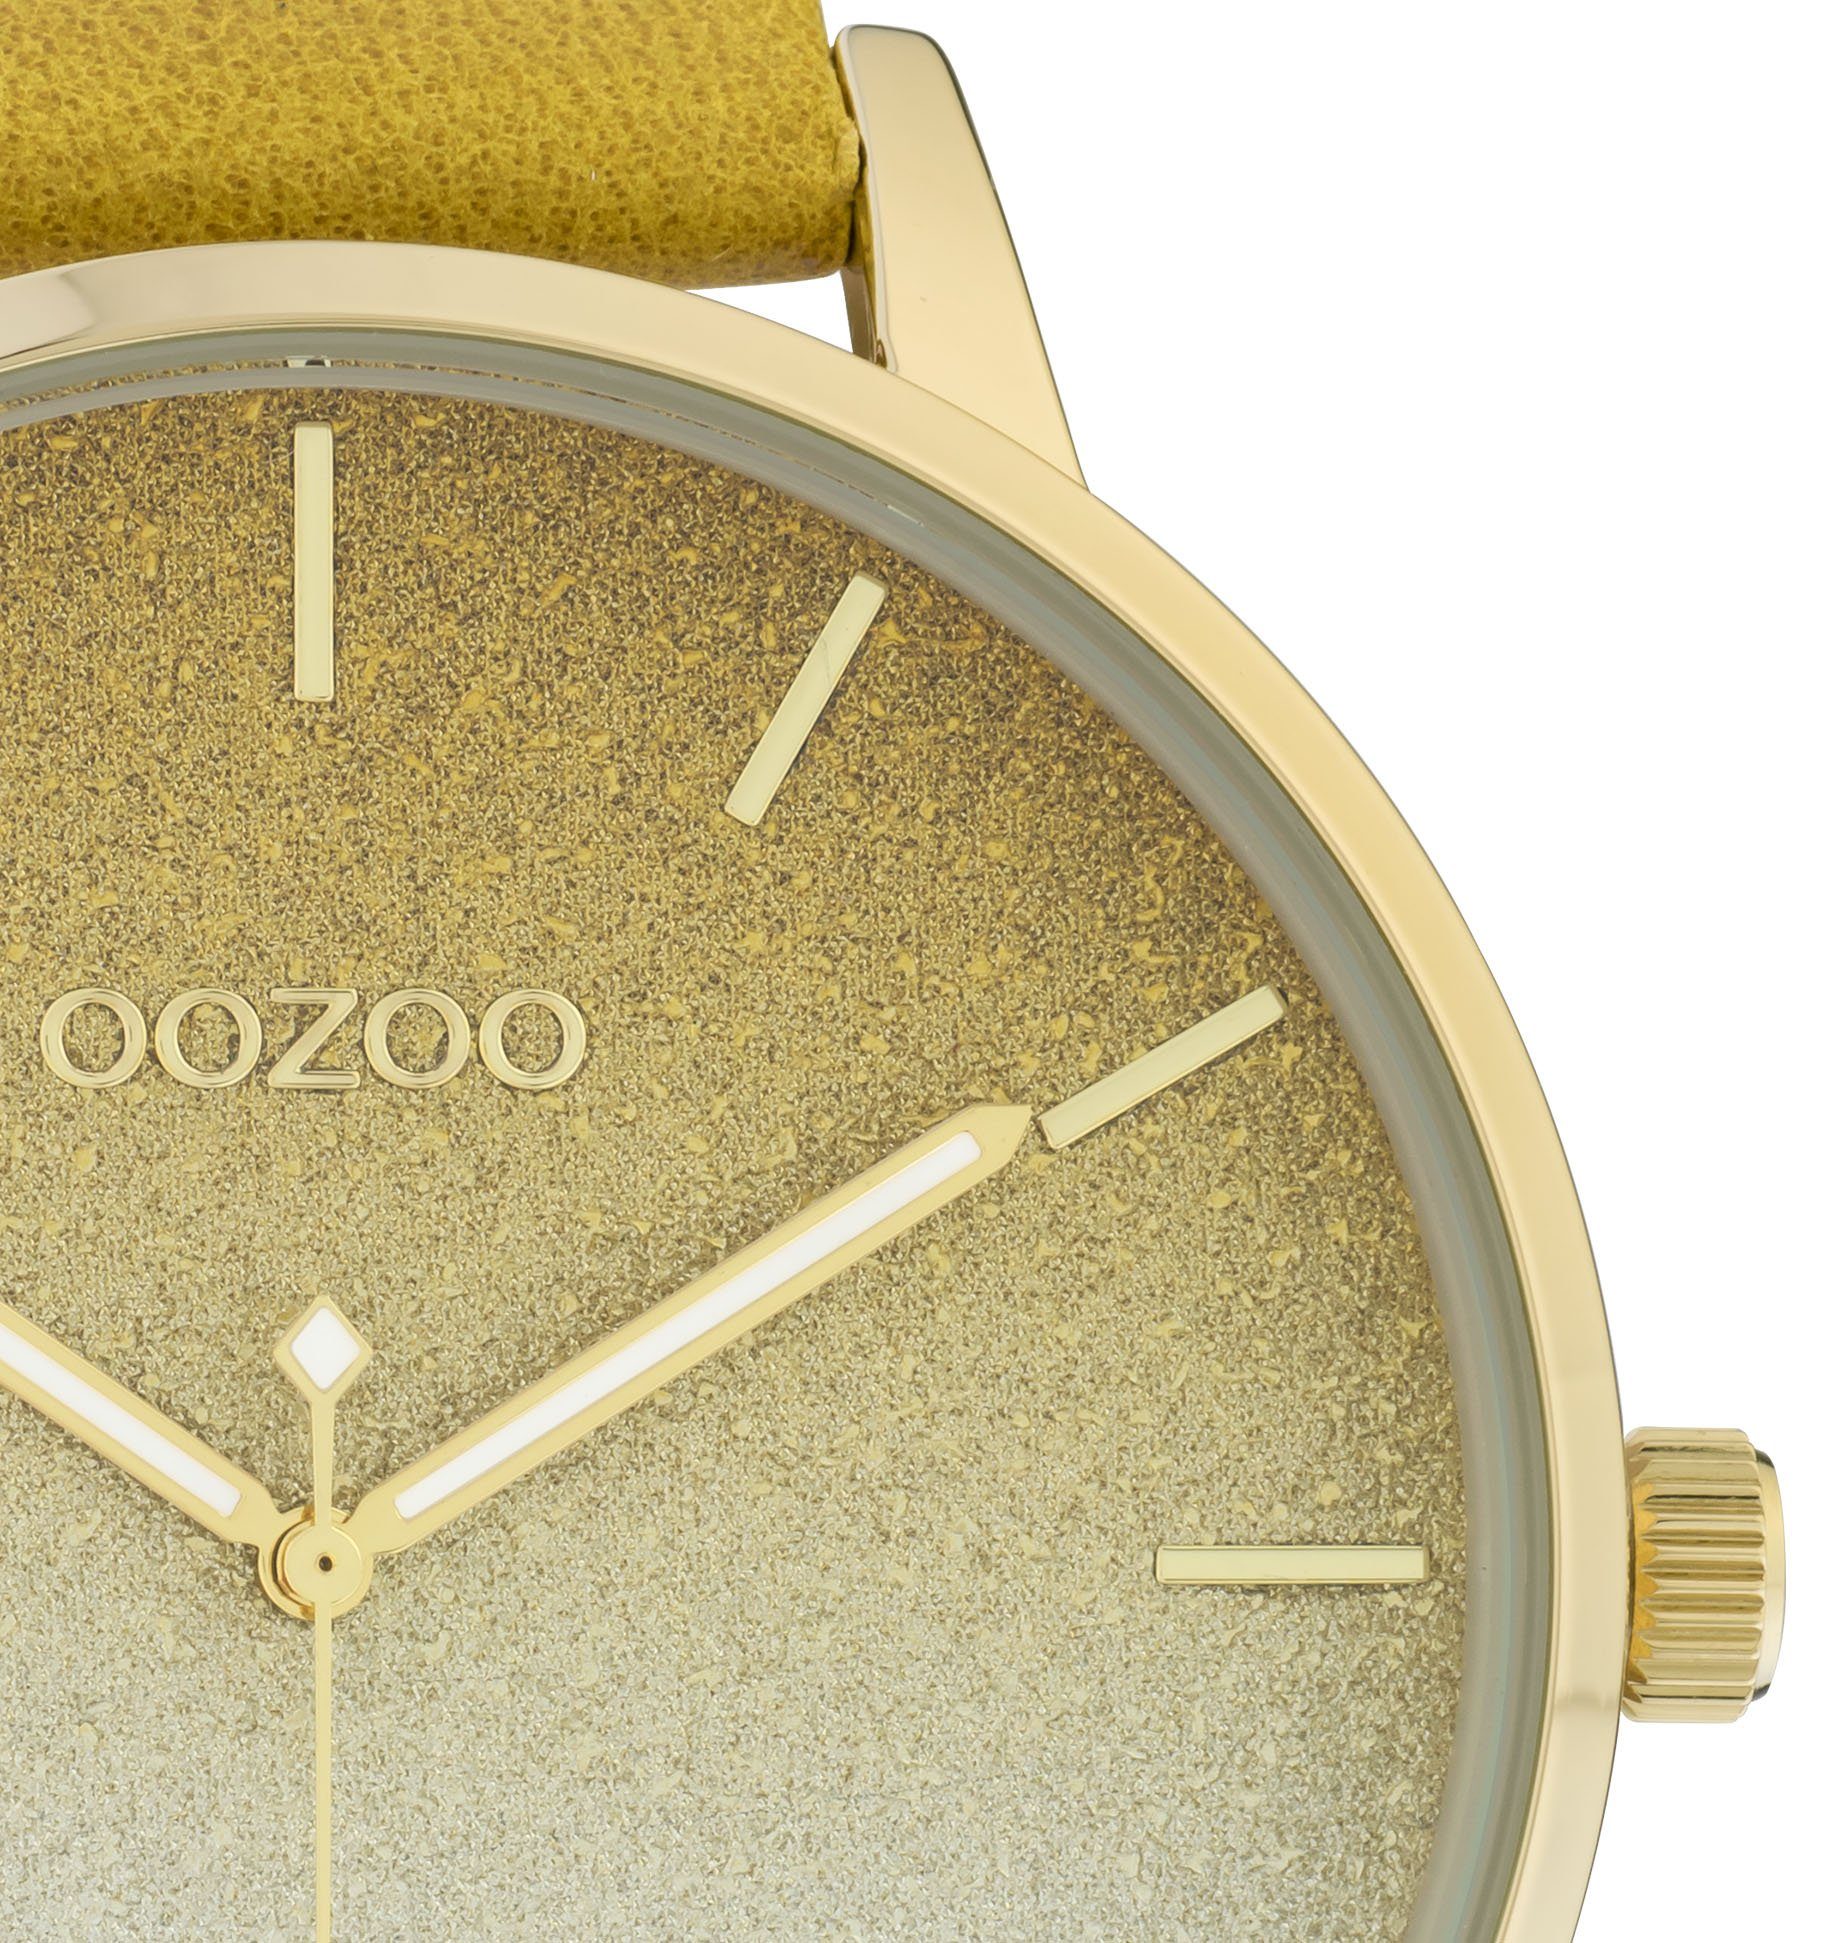 OOZOO Quarzuhr C10833, Metallgehäuse, goldfarben IP-beschichtet, Ø ca. 48 mm